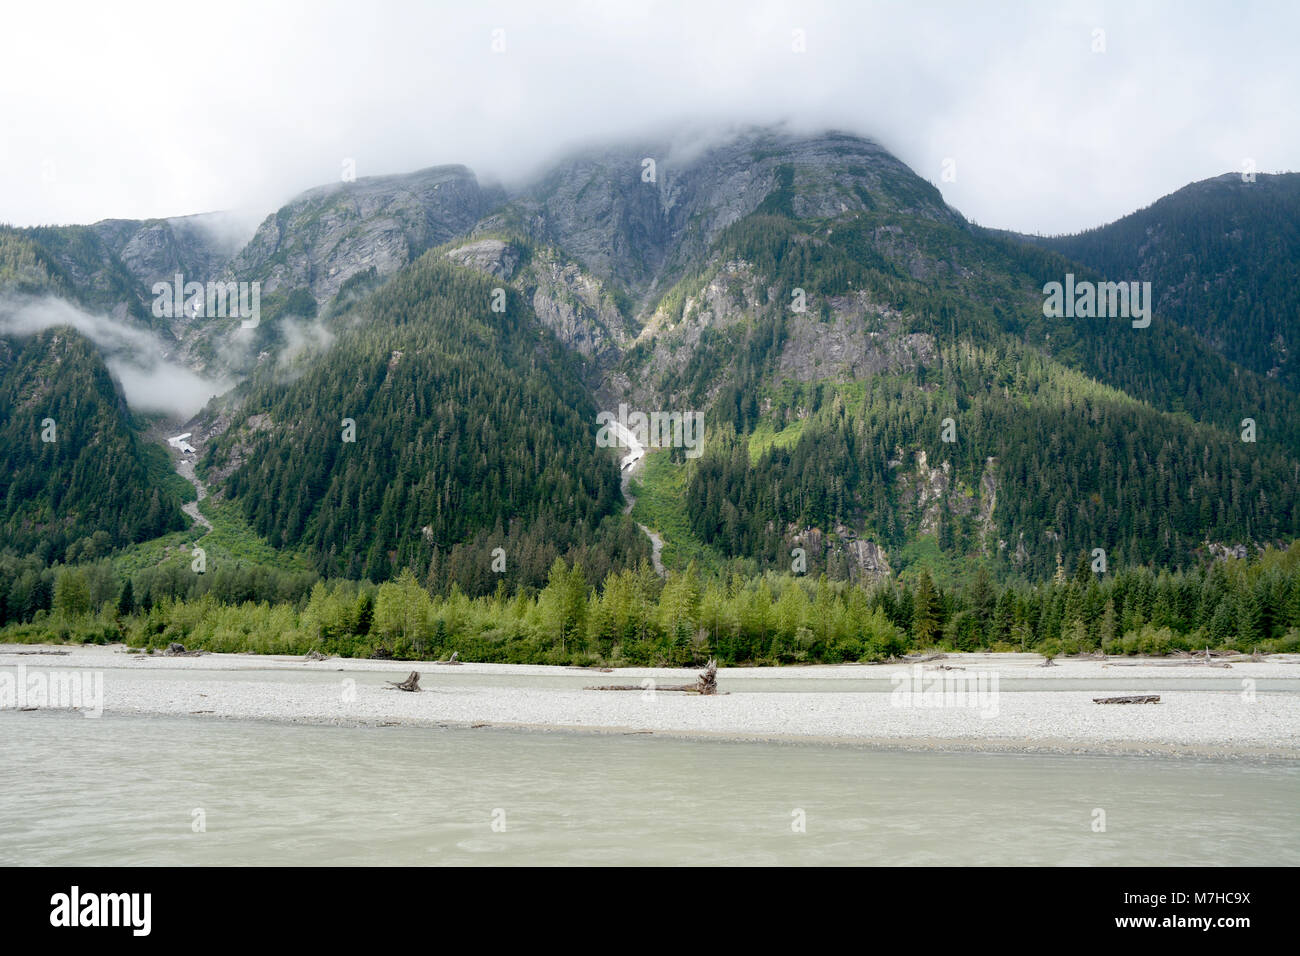 Montagne et forêt pluviale tempérée côtière au-dessus de la rivière Salmon, dans la forêt nationale de Tongass, près de Hyder, sud-est de l'Alaska, United States. Banque D'Images